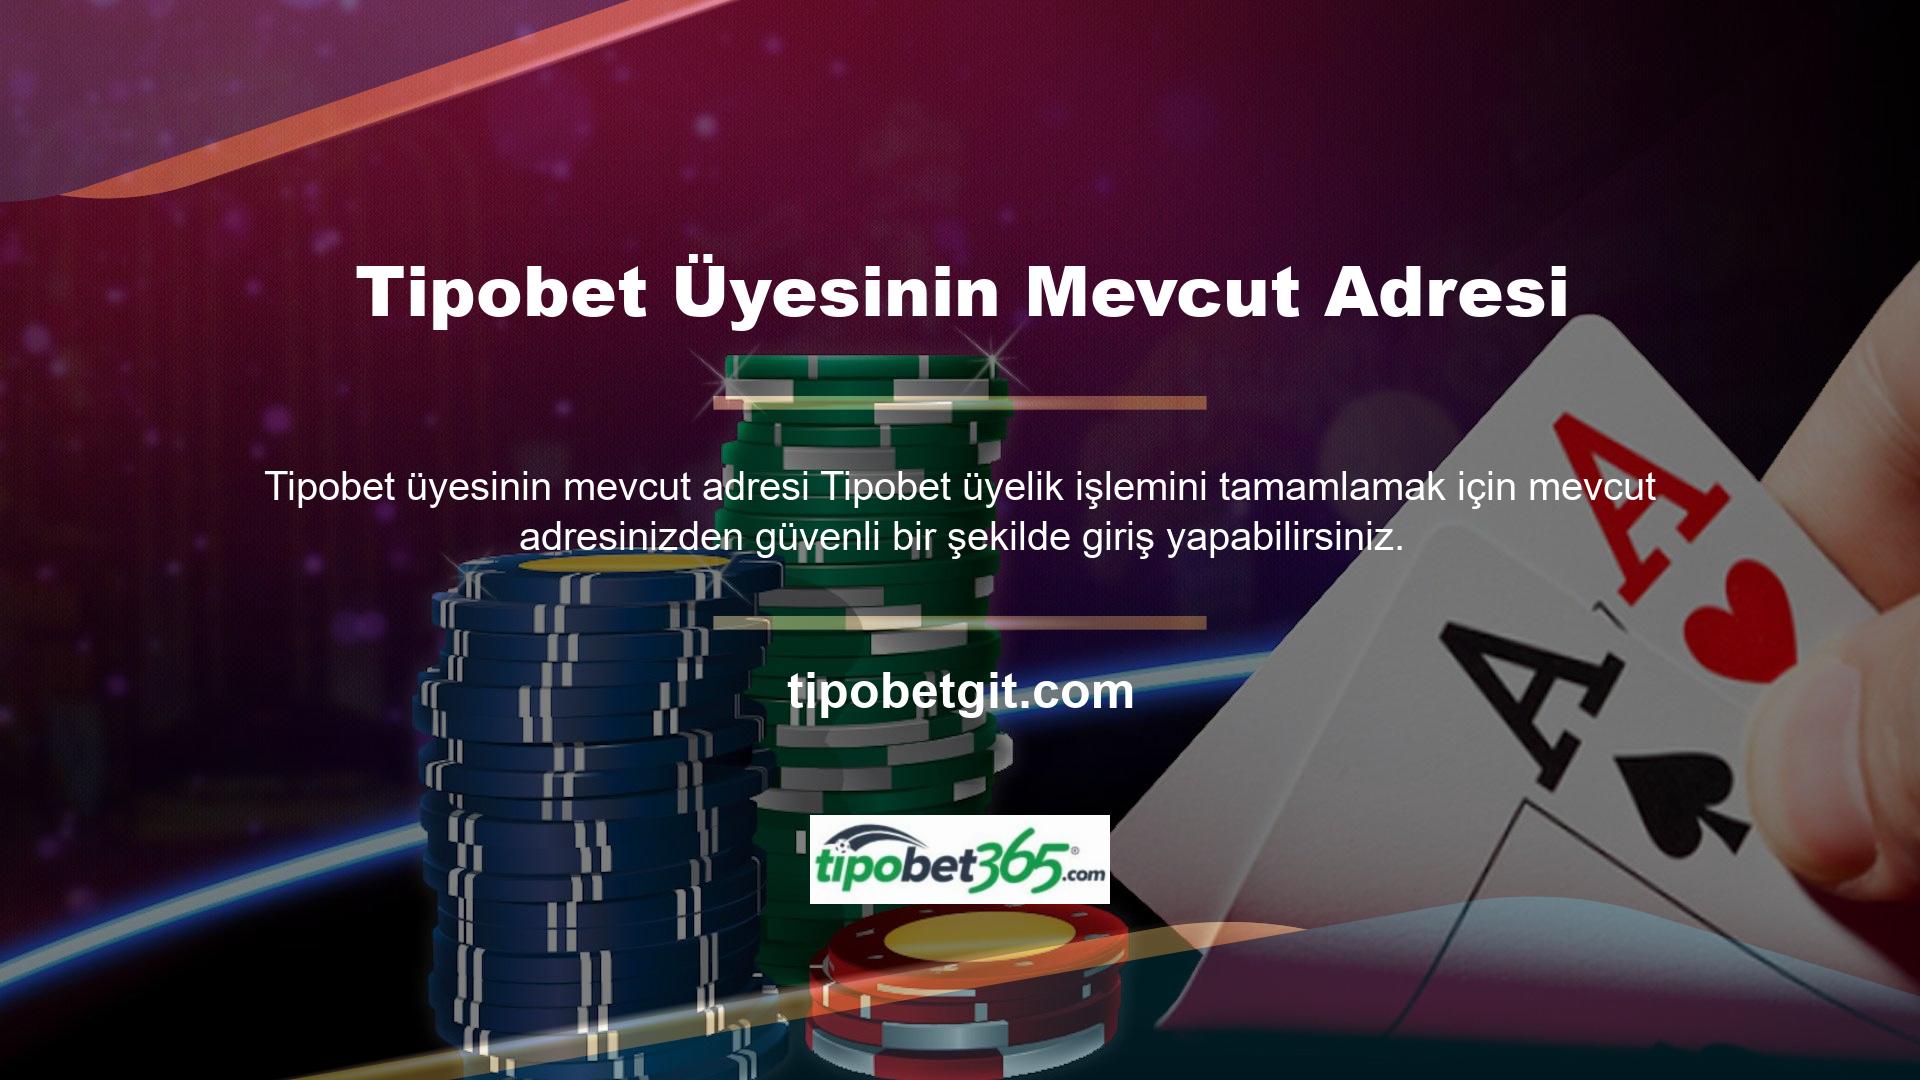 Tipobet, çok sayıda güvenli oyun seçeneği sunan, bugünlerde Türkiye pazarındaki en ilginç web sitelerinden birini destekliyor ve ona uyum sağlıyor